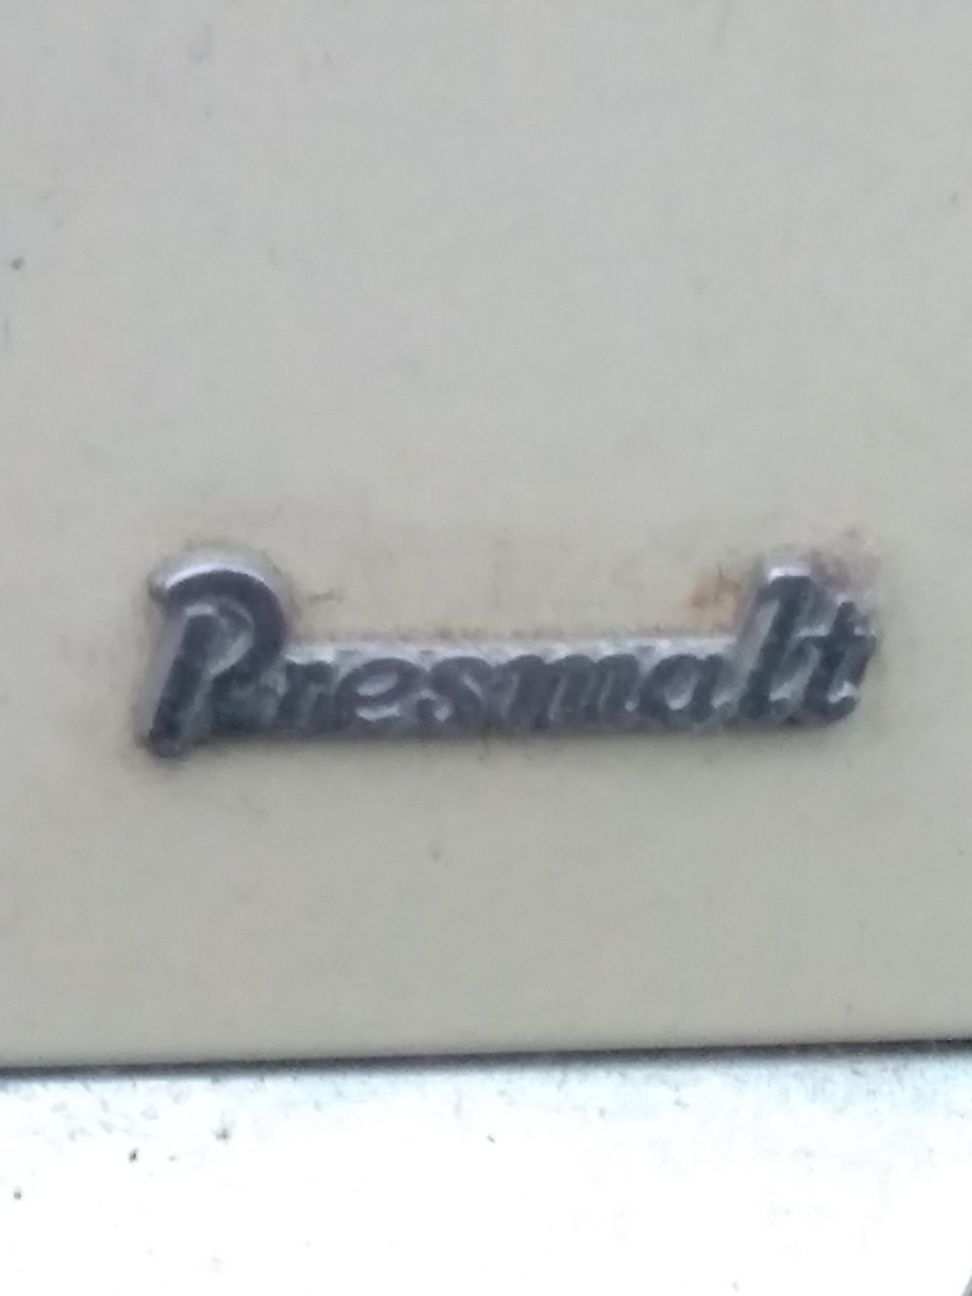 Aquecedor vintage "Presmalt"